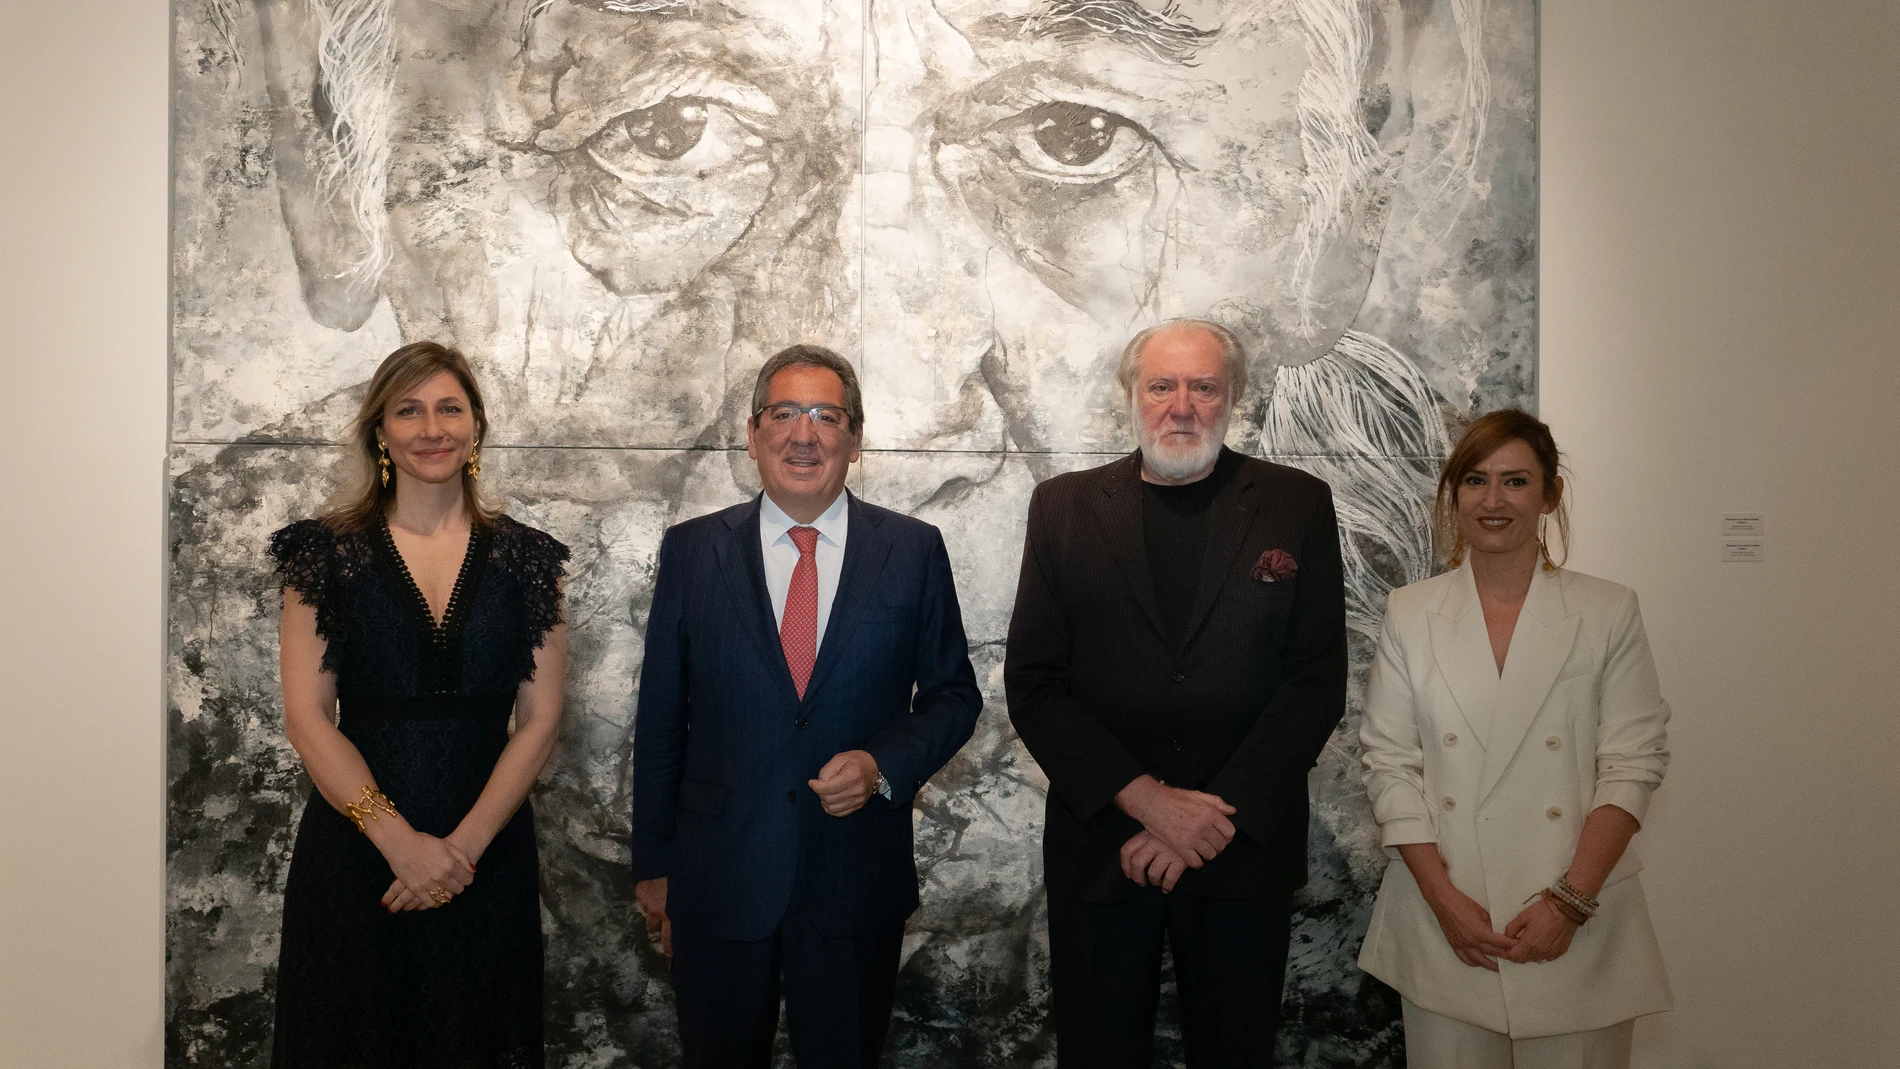 Inauguración de la exposición "Epifanías" en la Fundación Cajasol